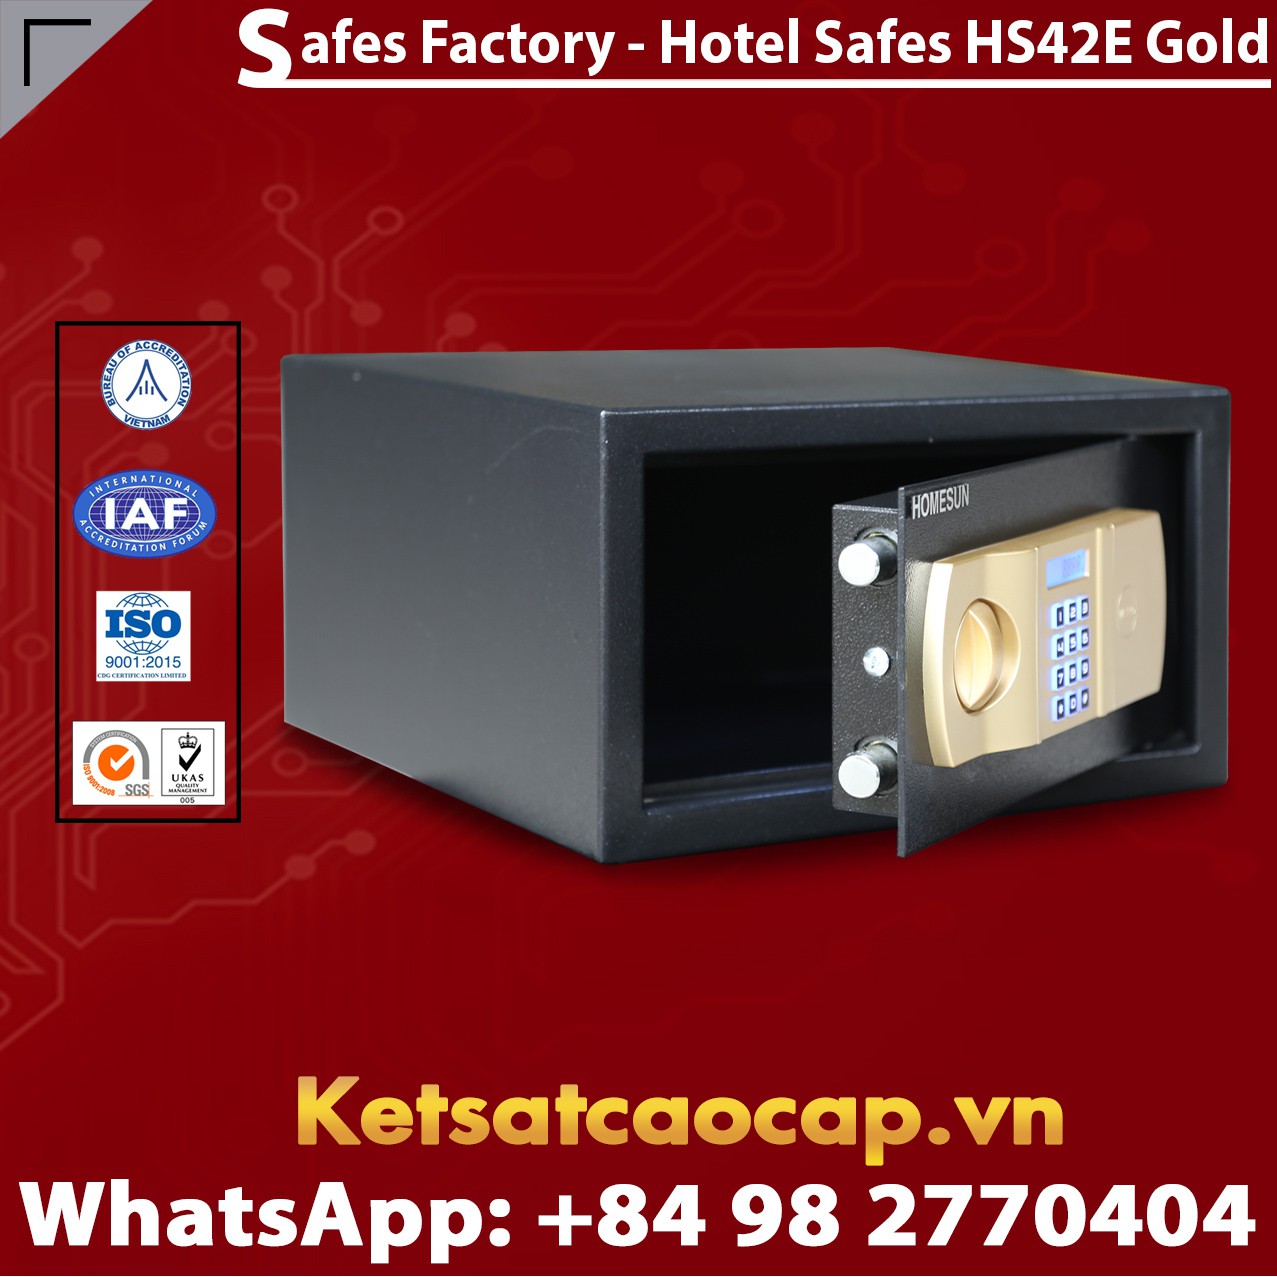 Hotel Safe Dimensions HOMESUN HS42 E Gold